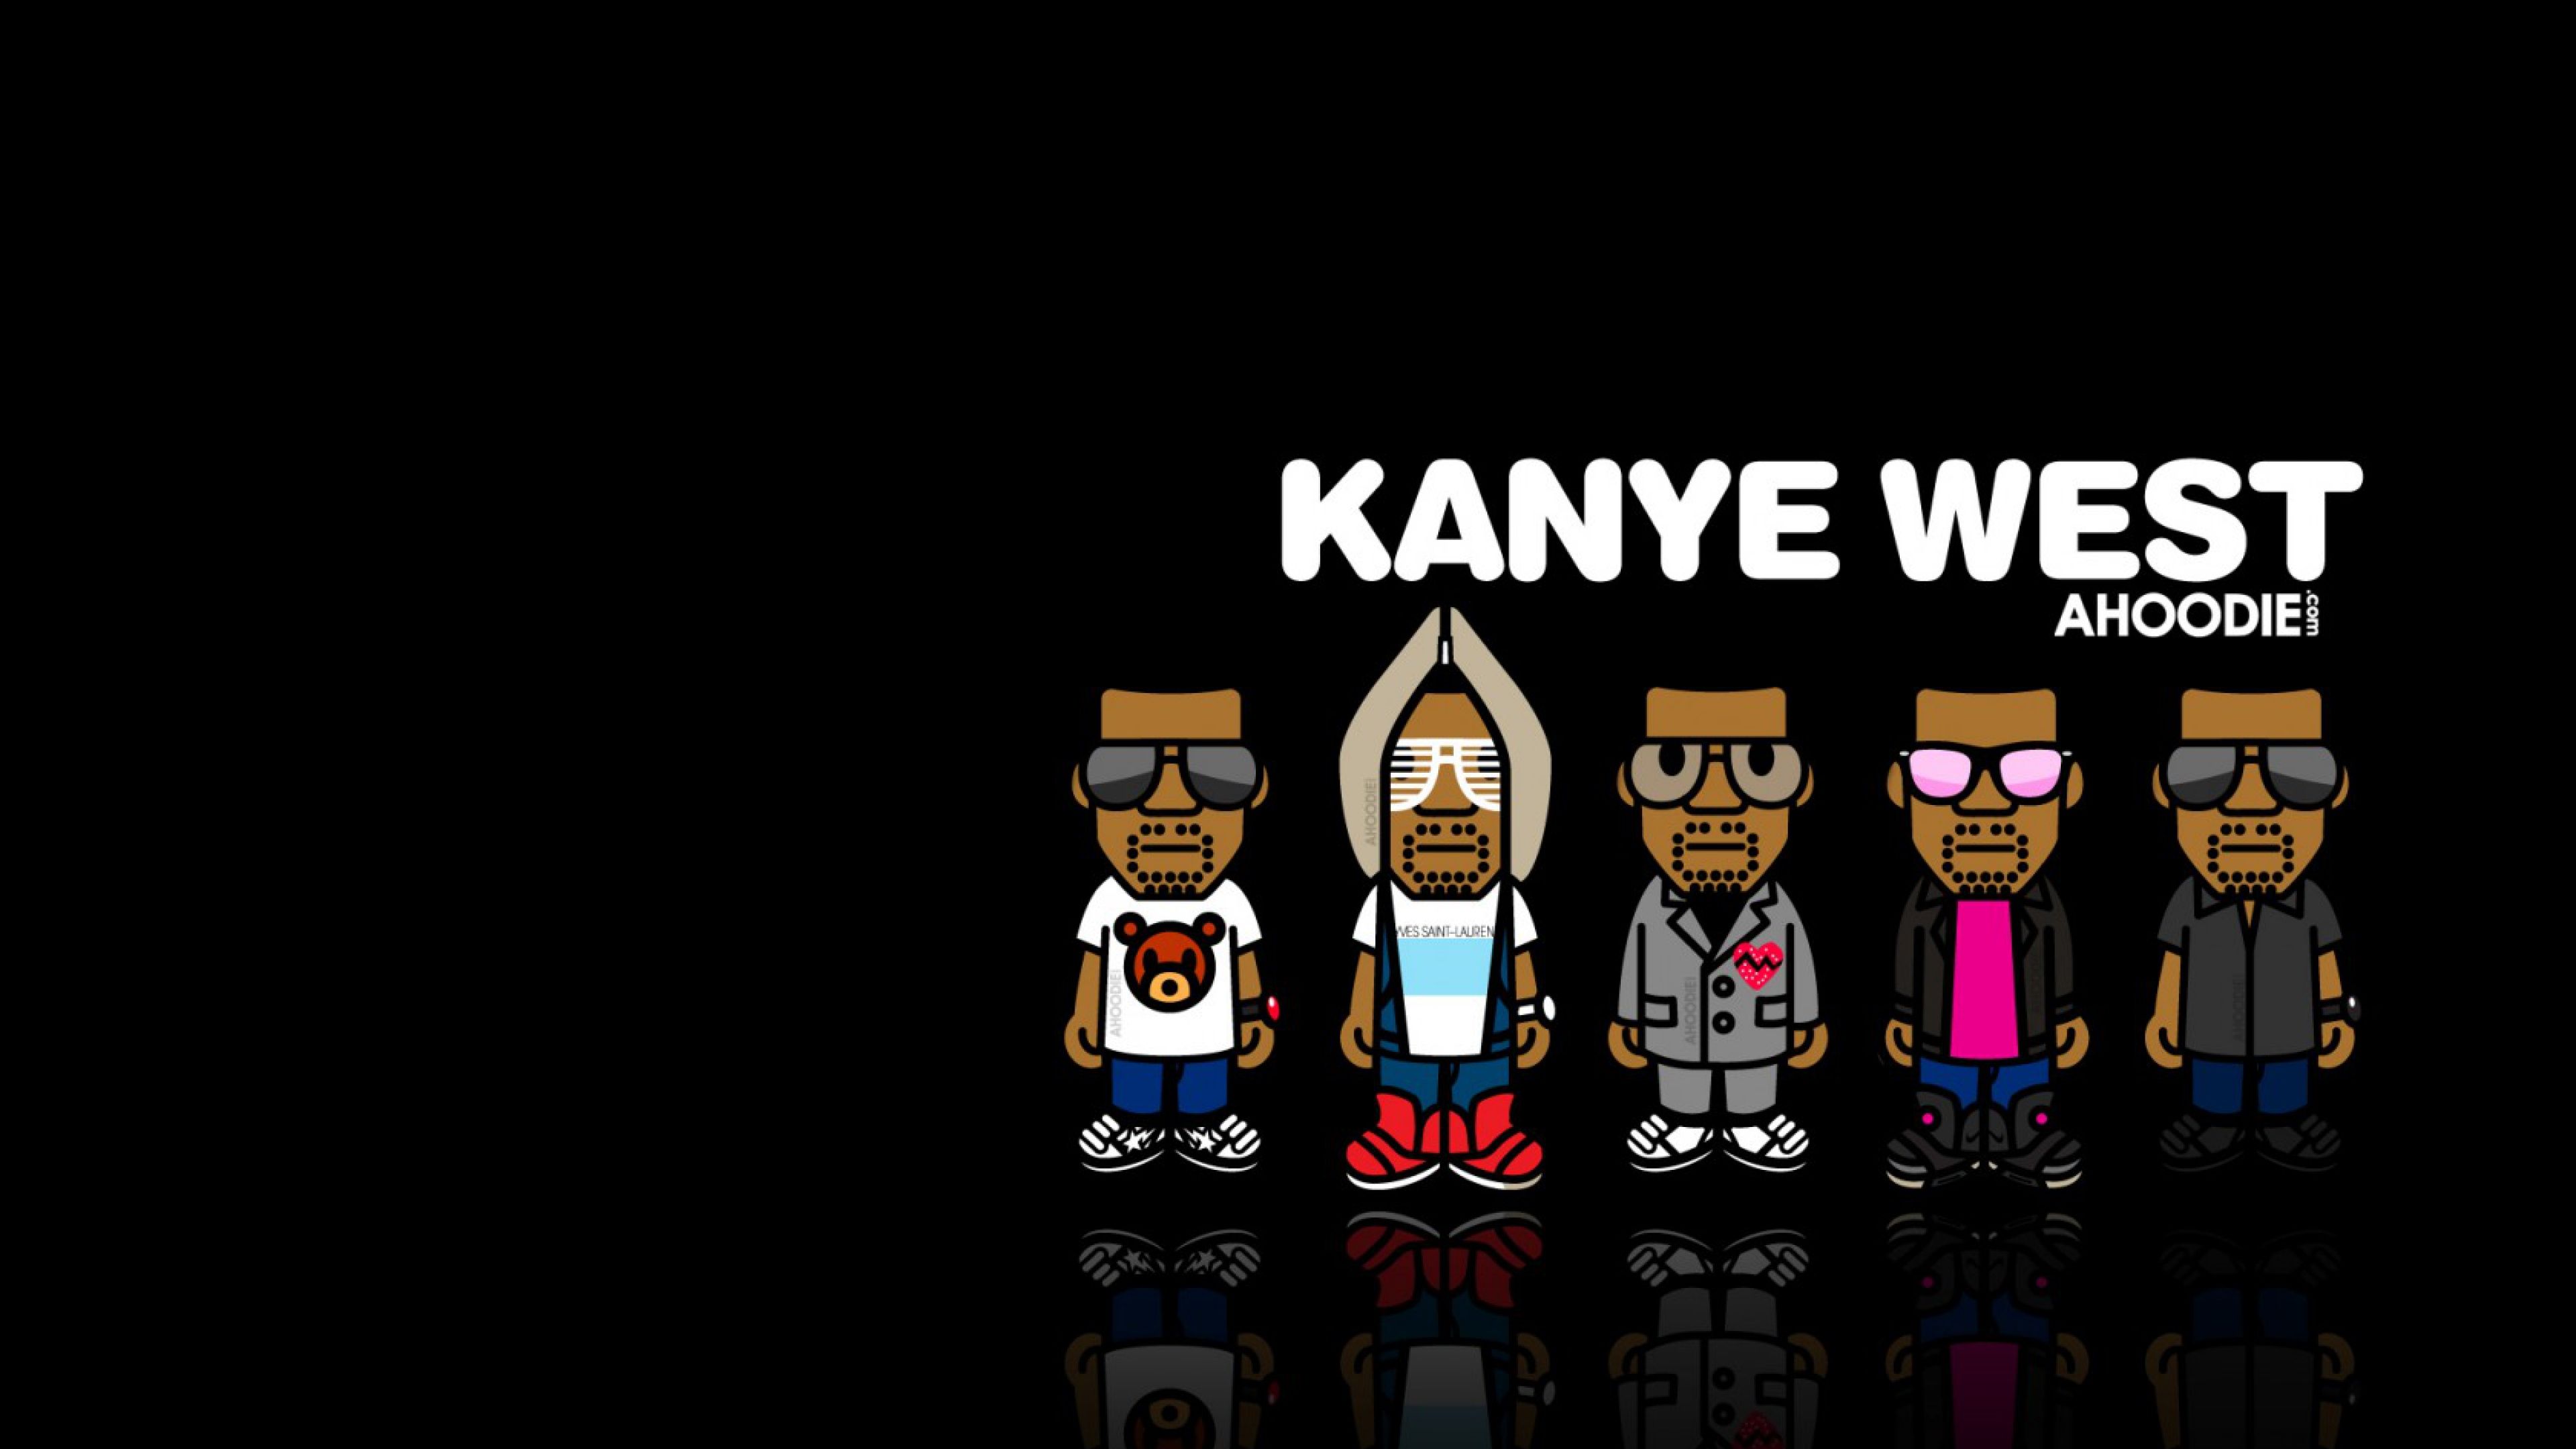 Download Wallpaper 3840x2160 Kanye West, Music, Image, Hip Hop 4K